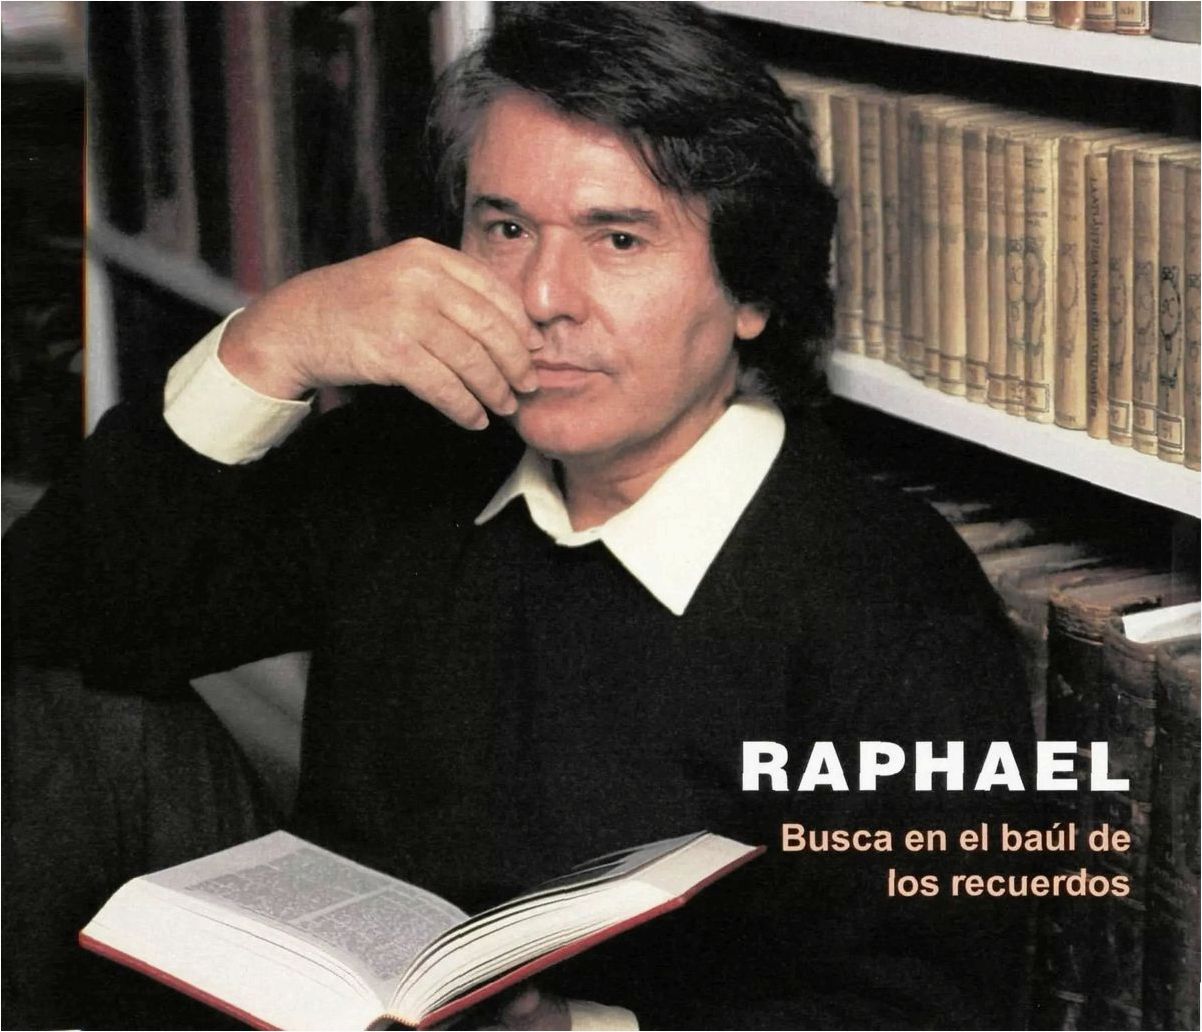 Рафаэль: биография его жизни и карьеры как певца